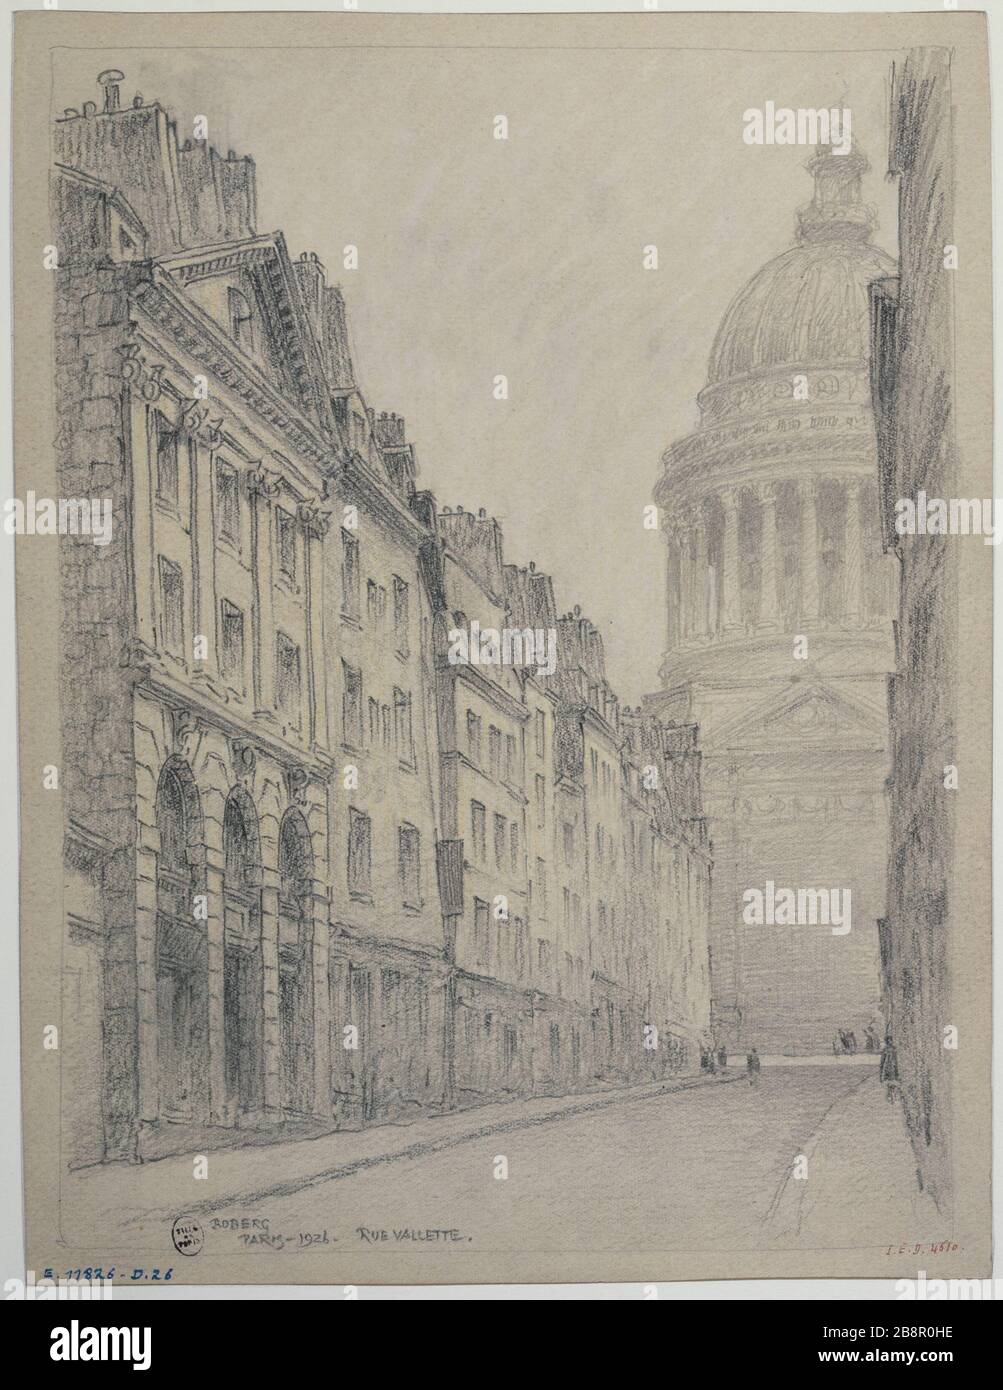 Rue Valette and the Pantheon, 1926 Gustave Ferdinand Boberg (1860-1946), architecte suédois. Rue Valette et le Panthéon. Crayon. Paris (Vème arr.), 1926. Paris, musée Carnavalet. Stock Photo